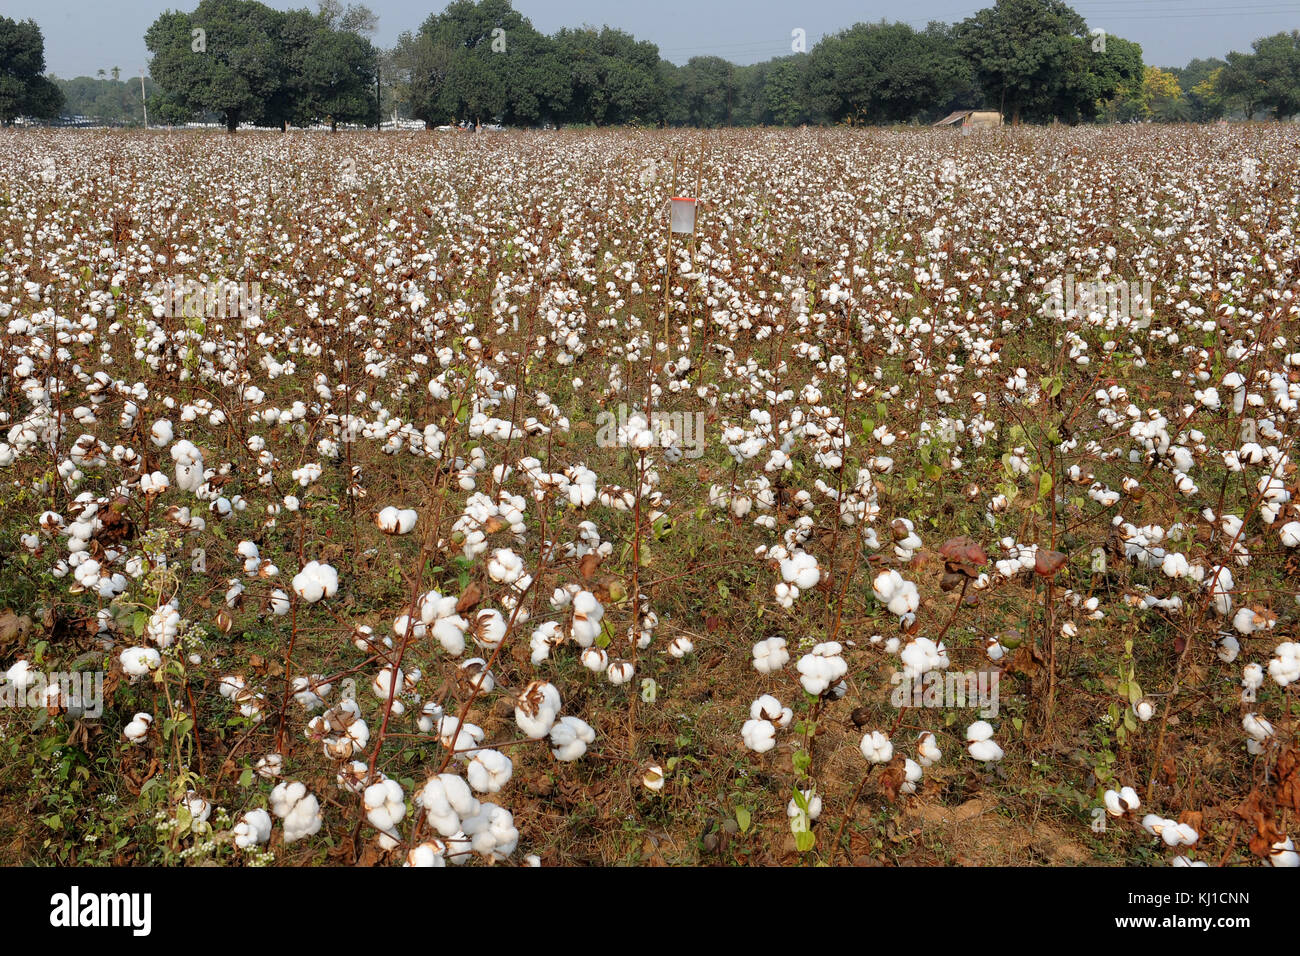 Gazipur, Bangladesch - November 20, 2017: Cotton Field in gazipur, in der Nähe von Dhaka, Bangladesch Bangladesch ist eines der größten Baumwolle Einführer in der wor Stockfoto